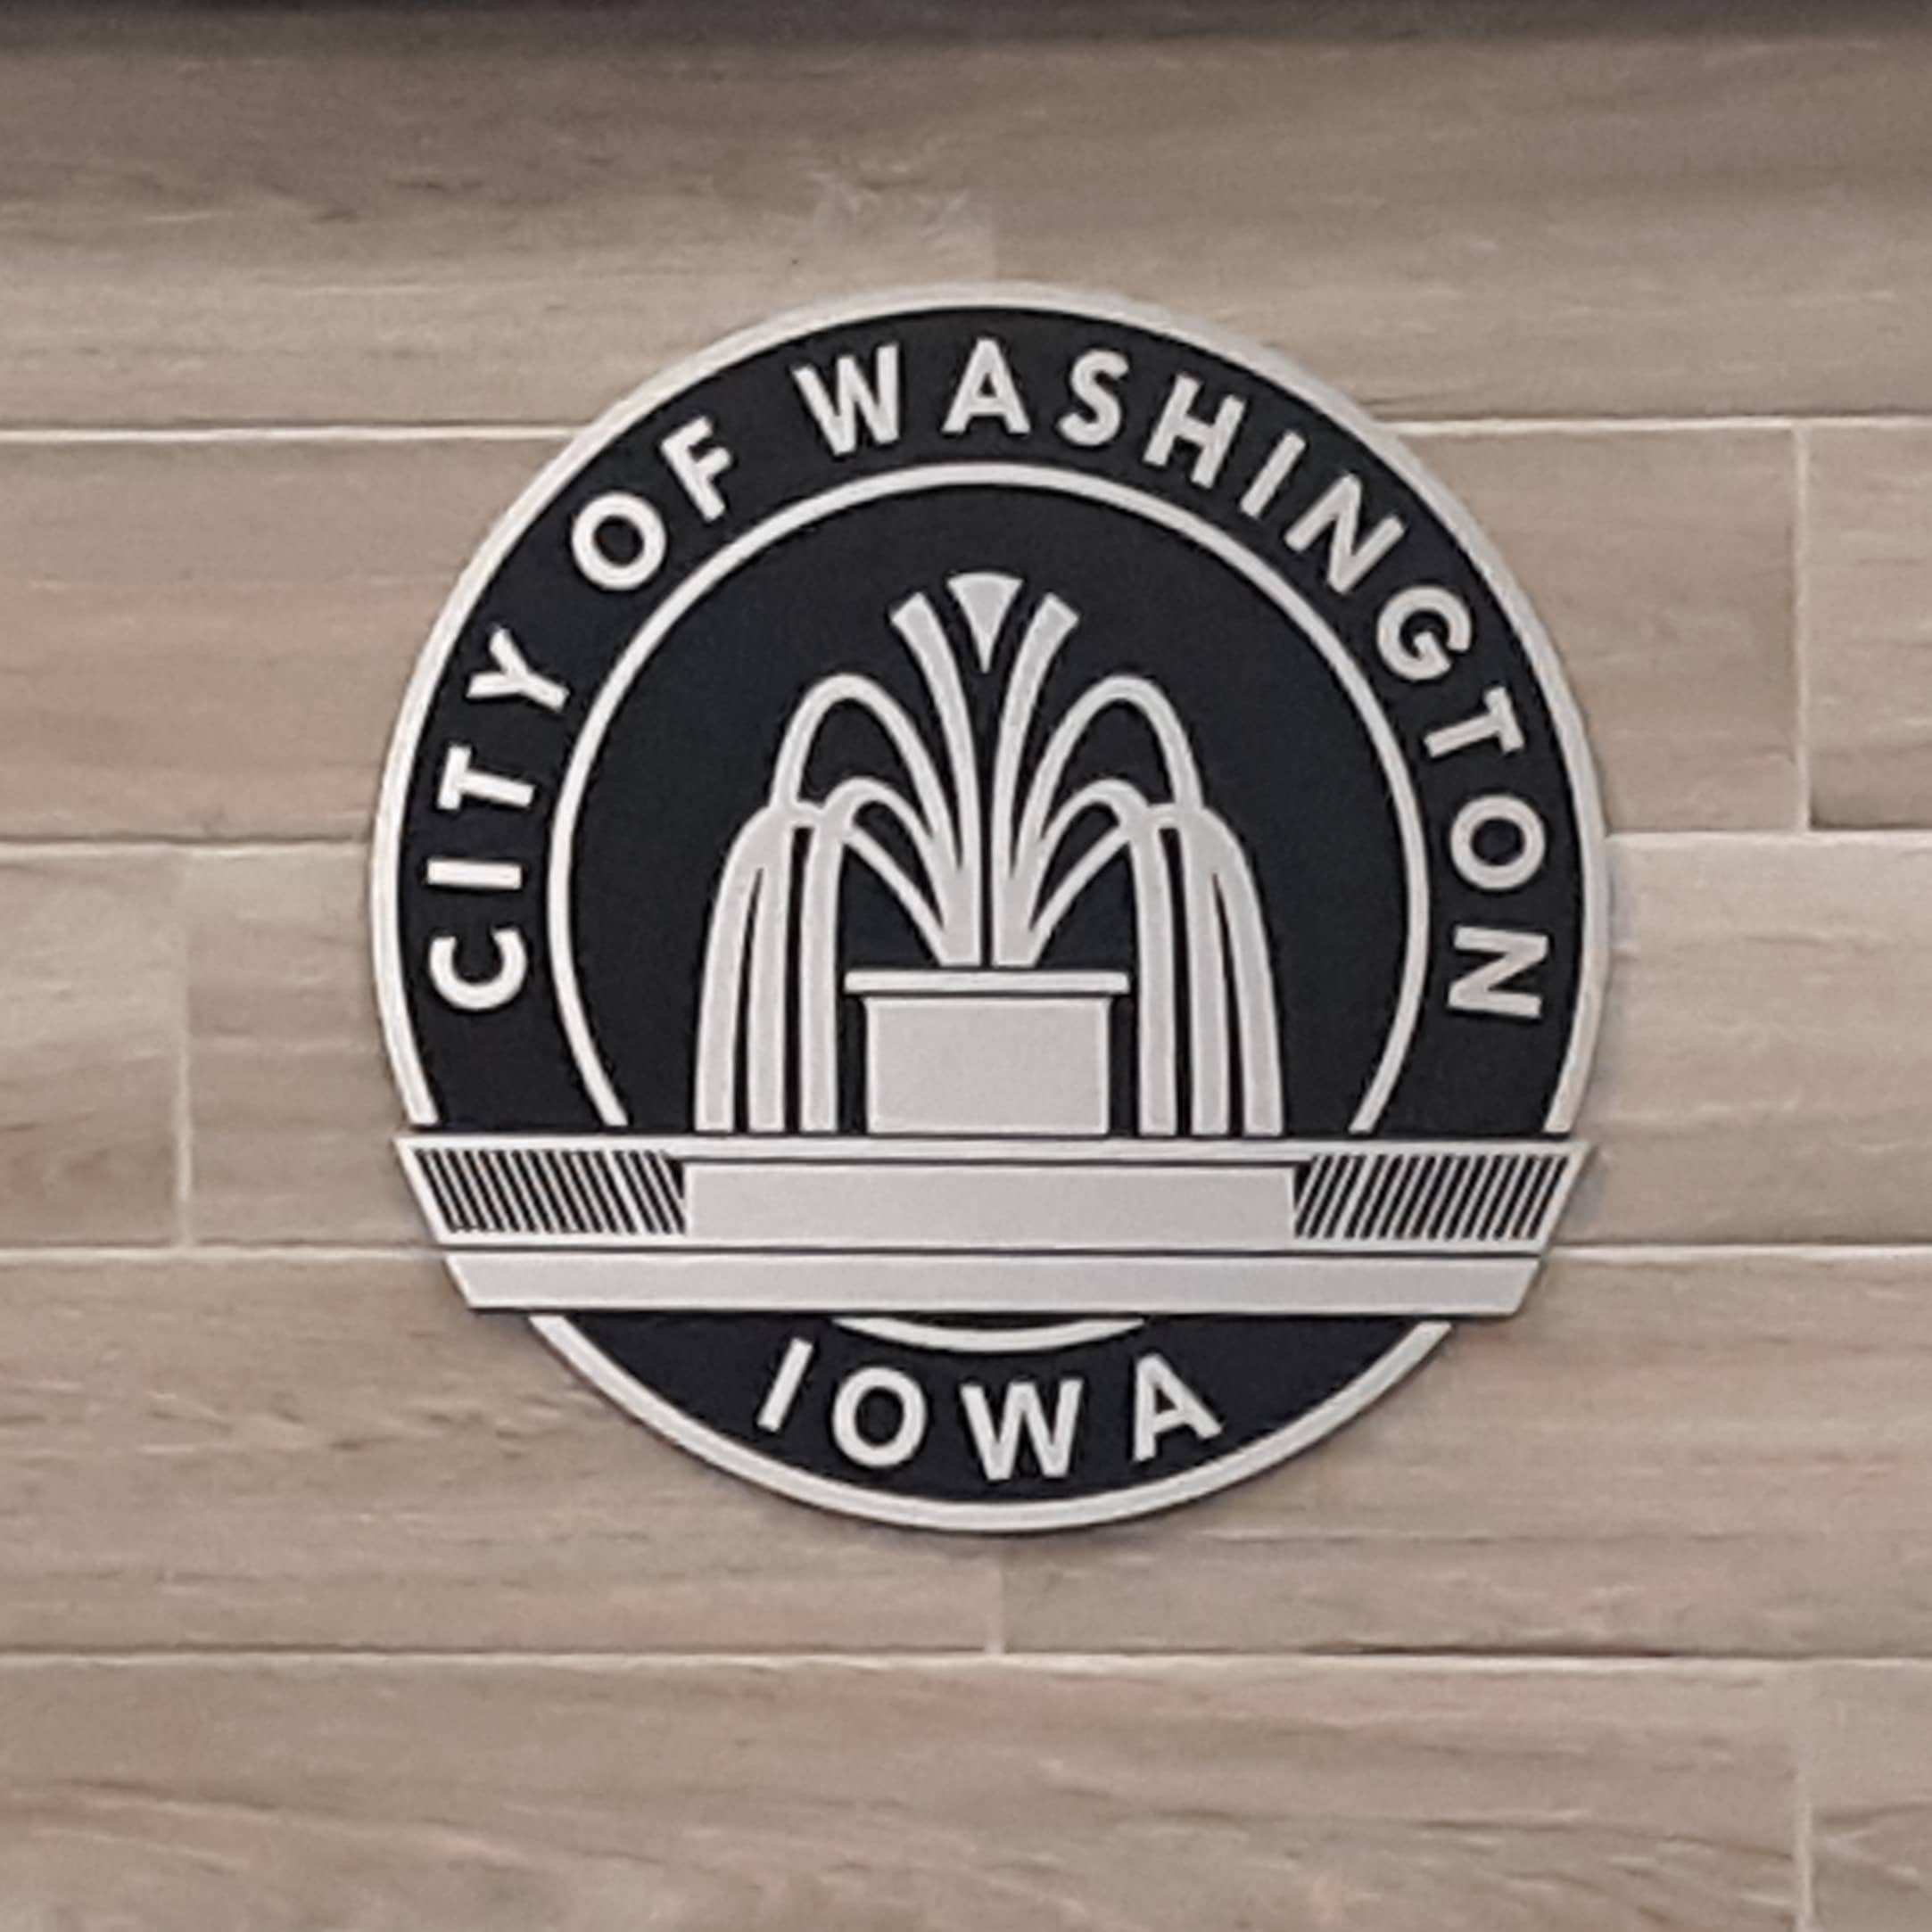 city-of-washington-iowa-emblem